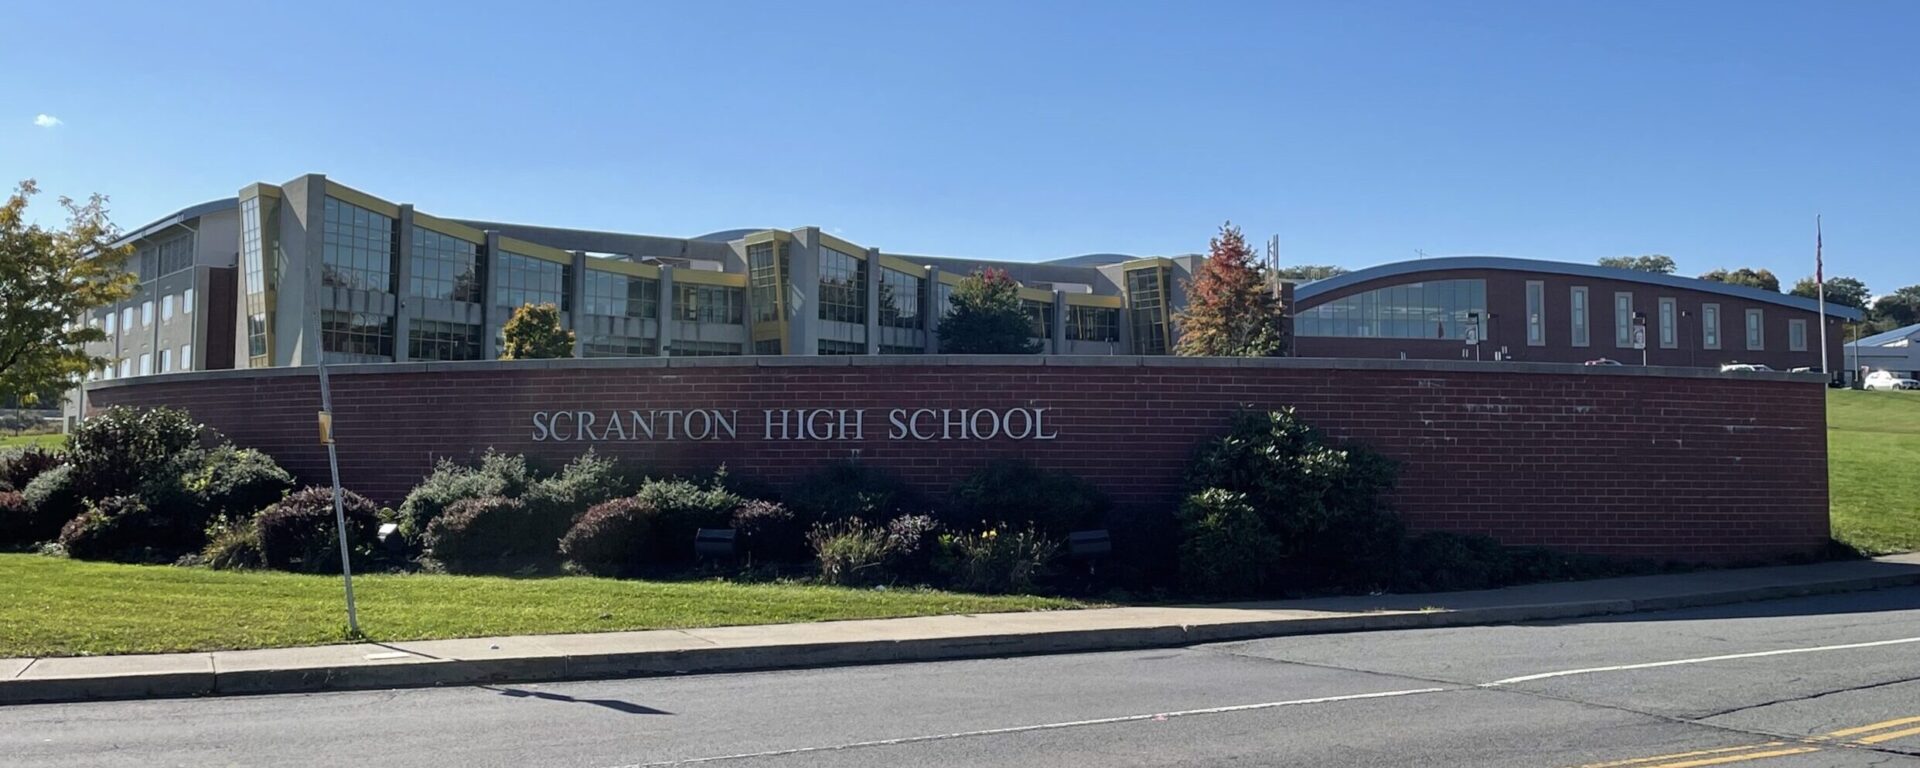 Scranton High School